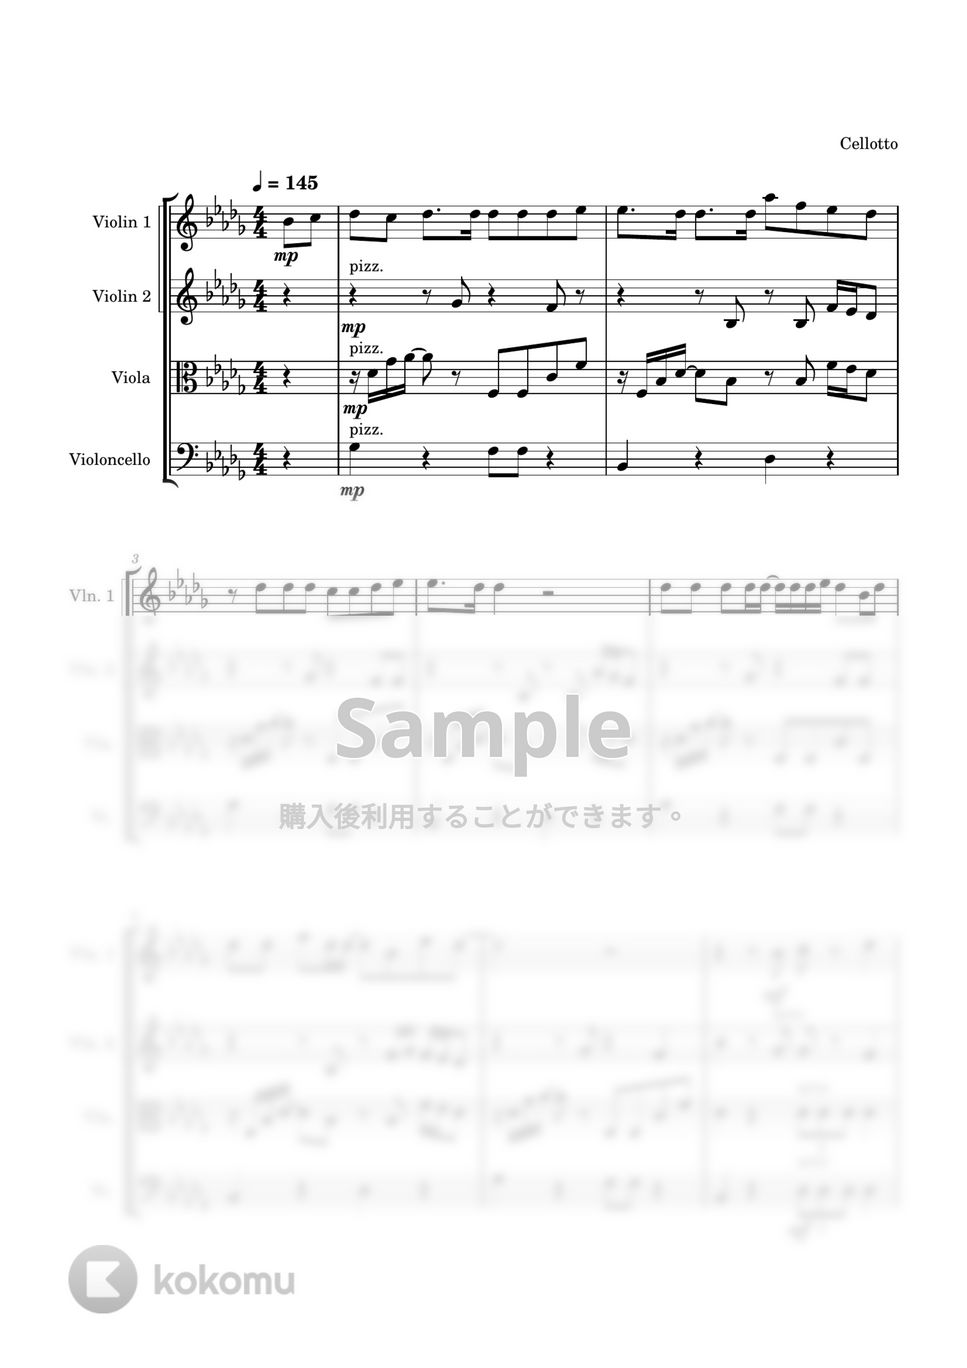 バルーン - シャルル (弦楽四重奏) by Cellotto